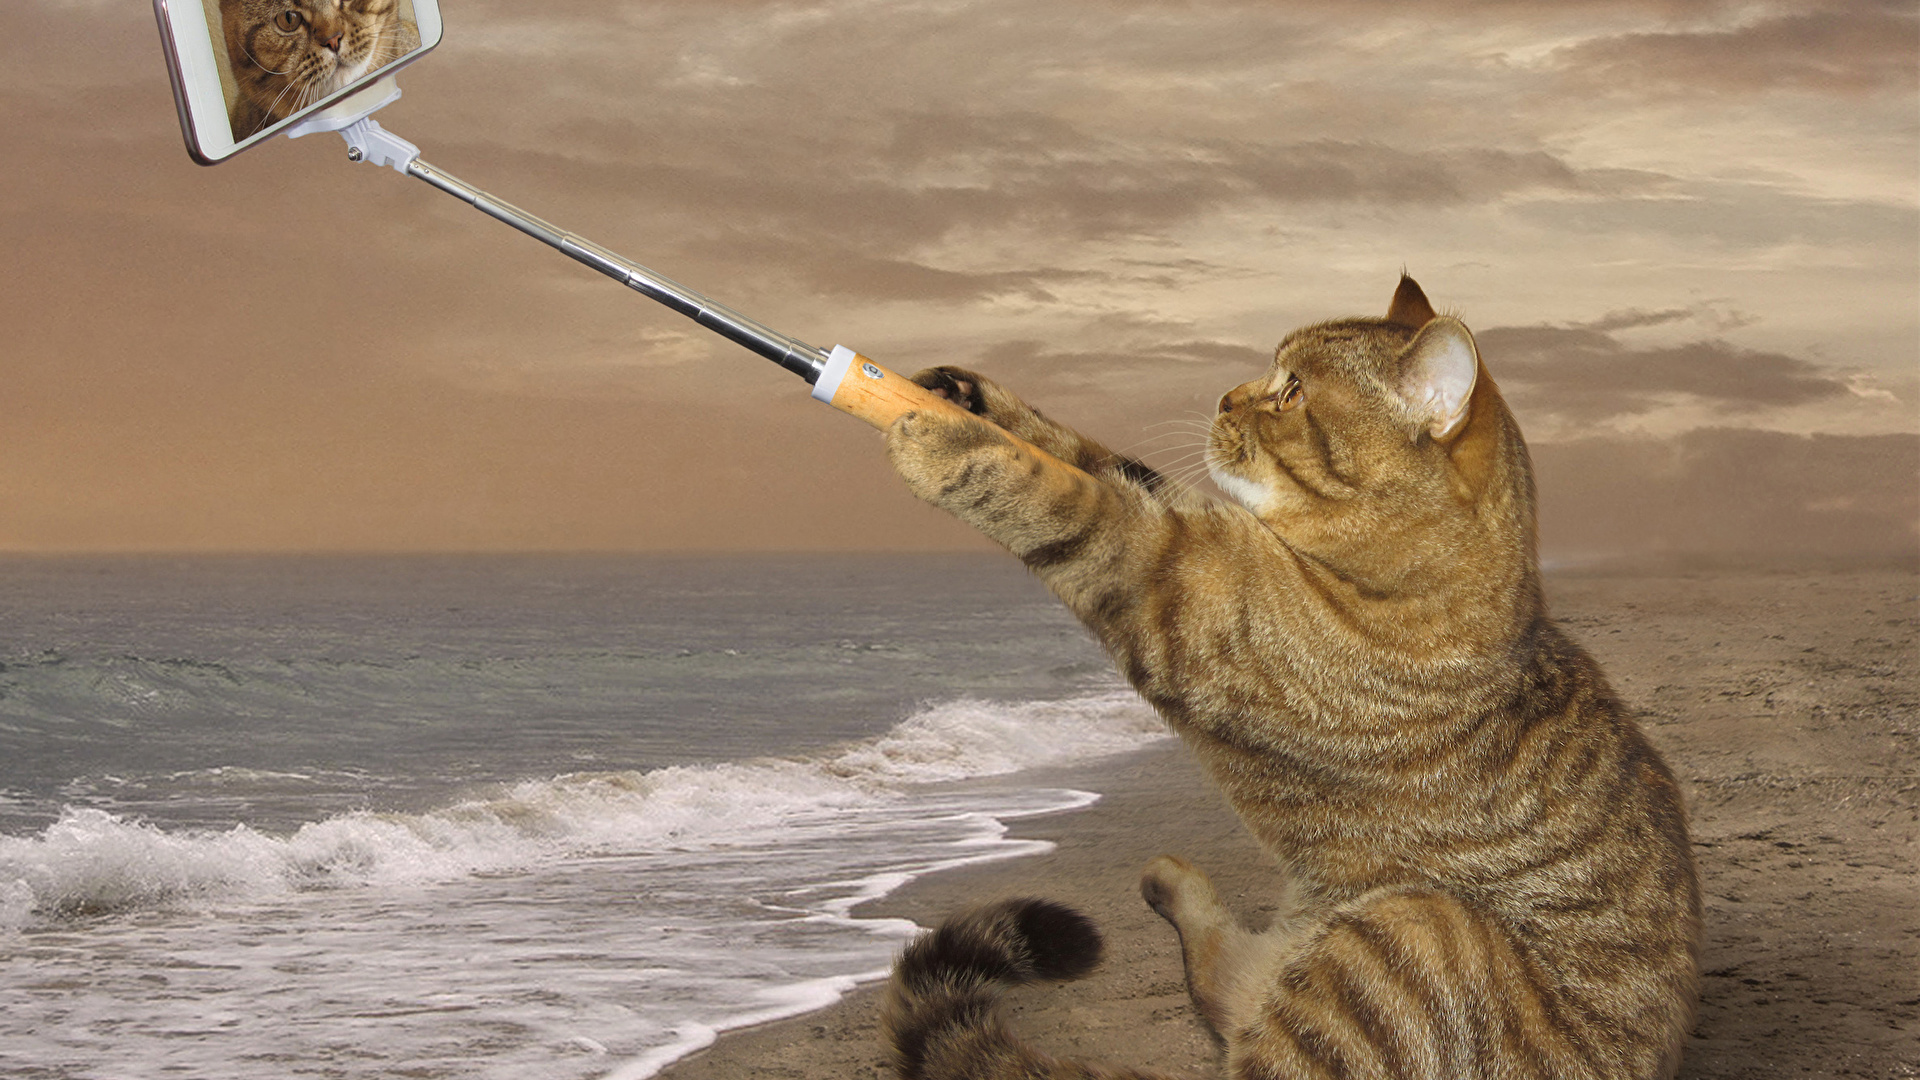 壁紙 1920x1080 クリエイティブ 飼い猫 海岸 おもしろい スマートフォン 座っ 自分撮り 動物 ダウンロード 写真